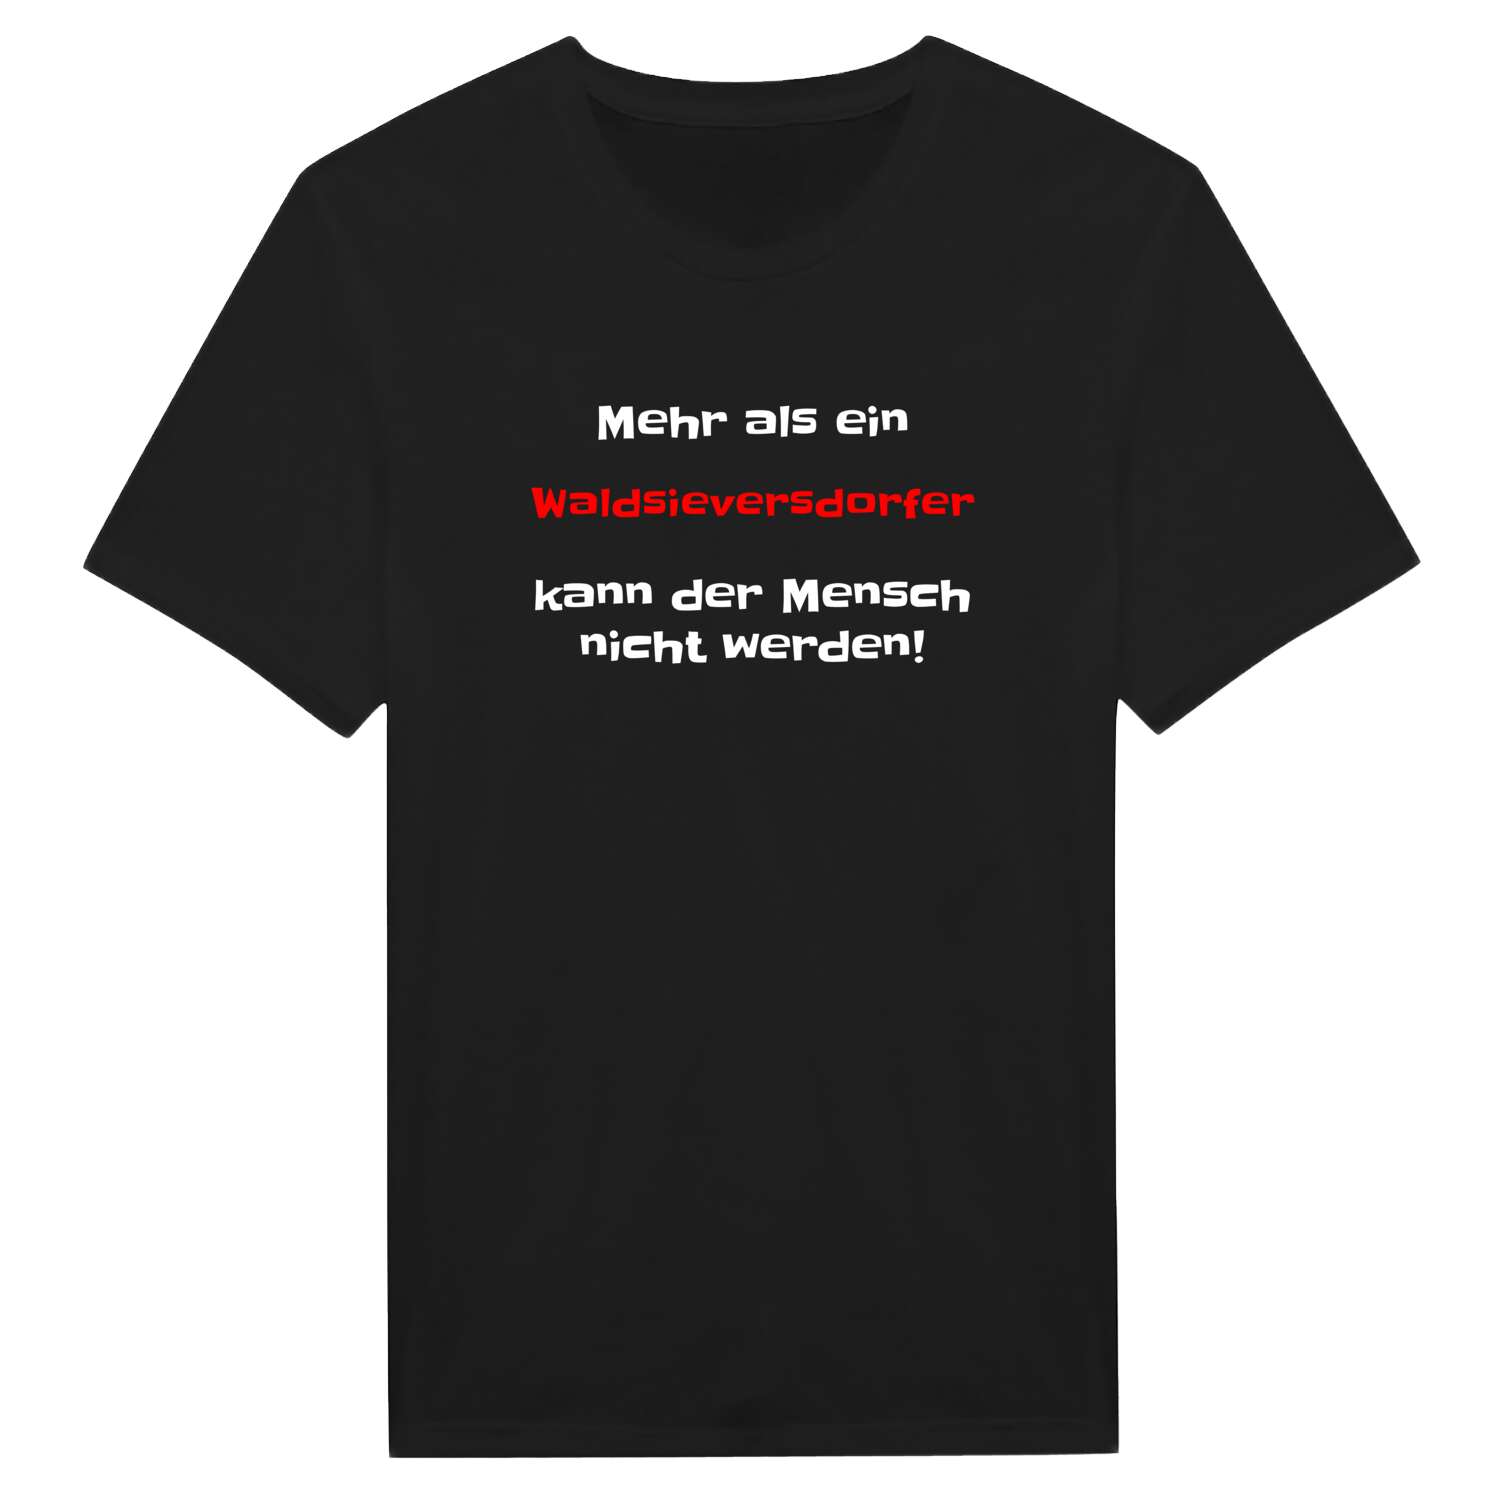 Waldsieversdorf T-Shirt »Mehr als ein«